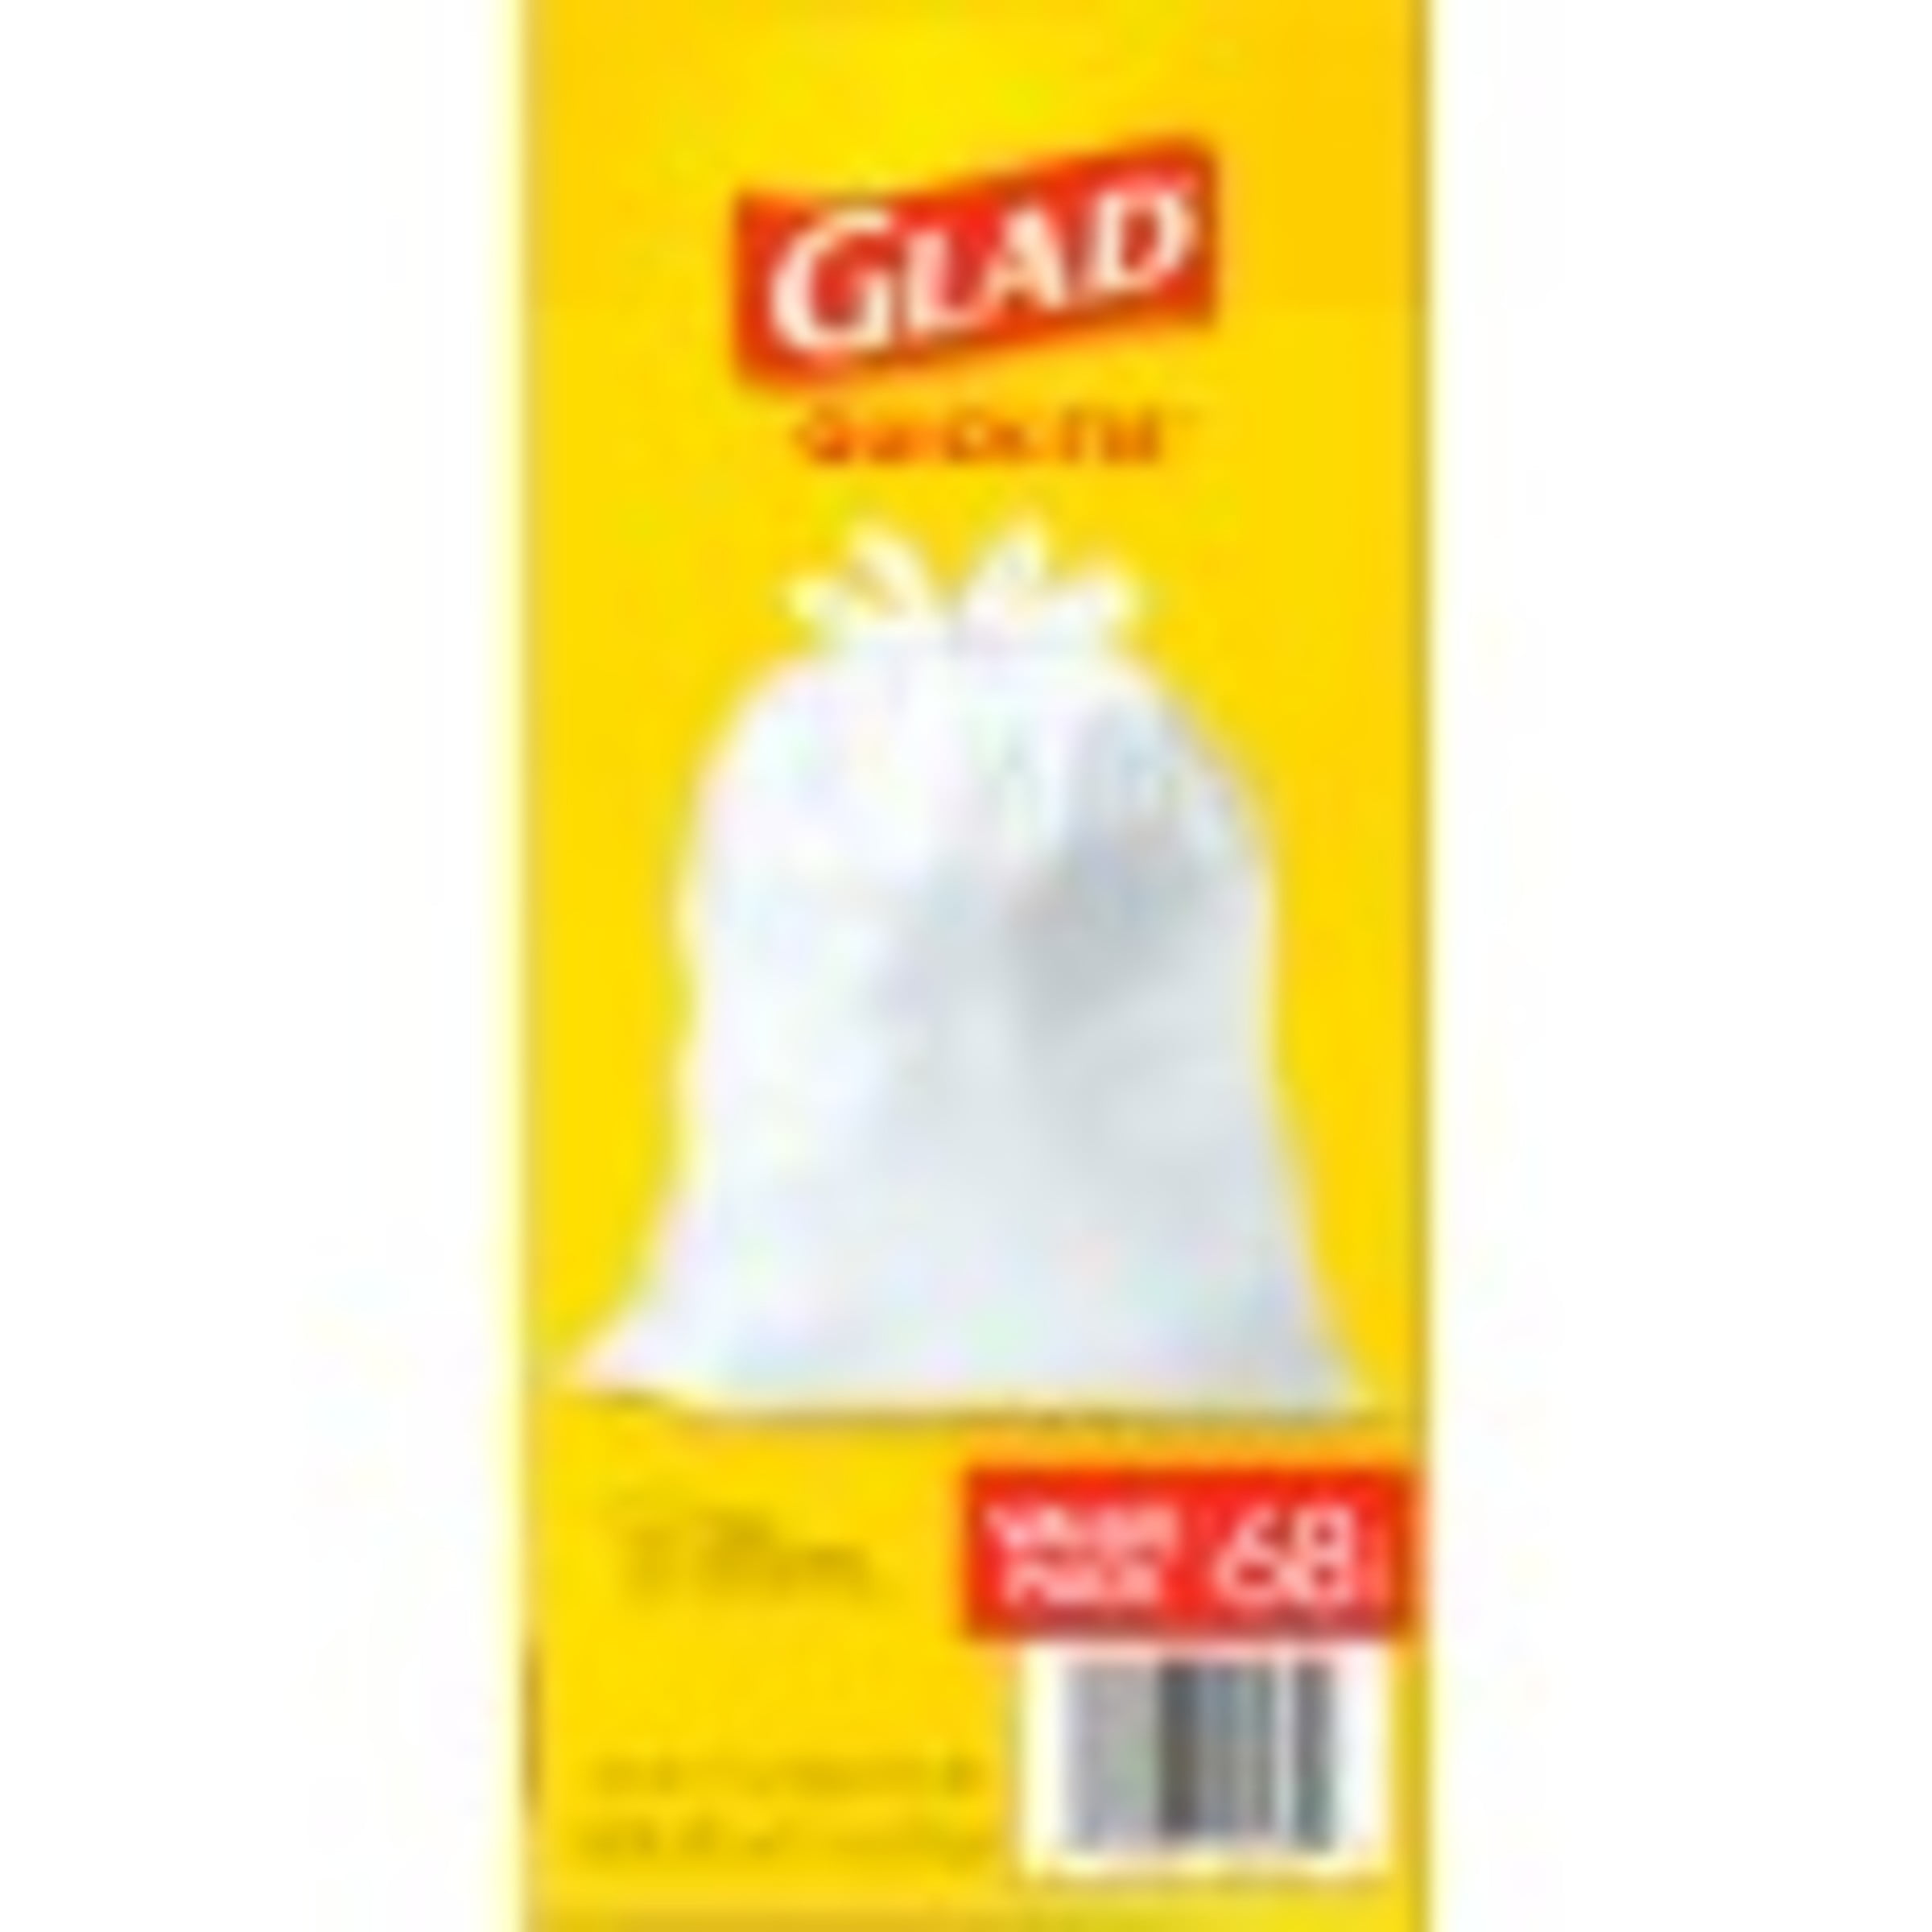 Glad® Tall Kitchen Quick-Tie® Trash Bags - 13 Gallon White Trash